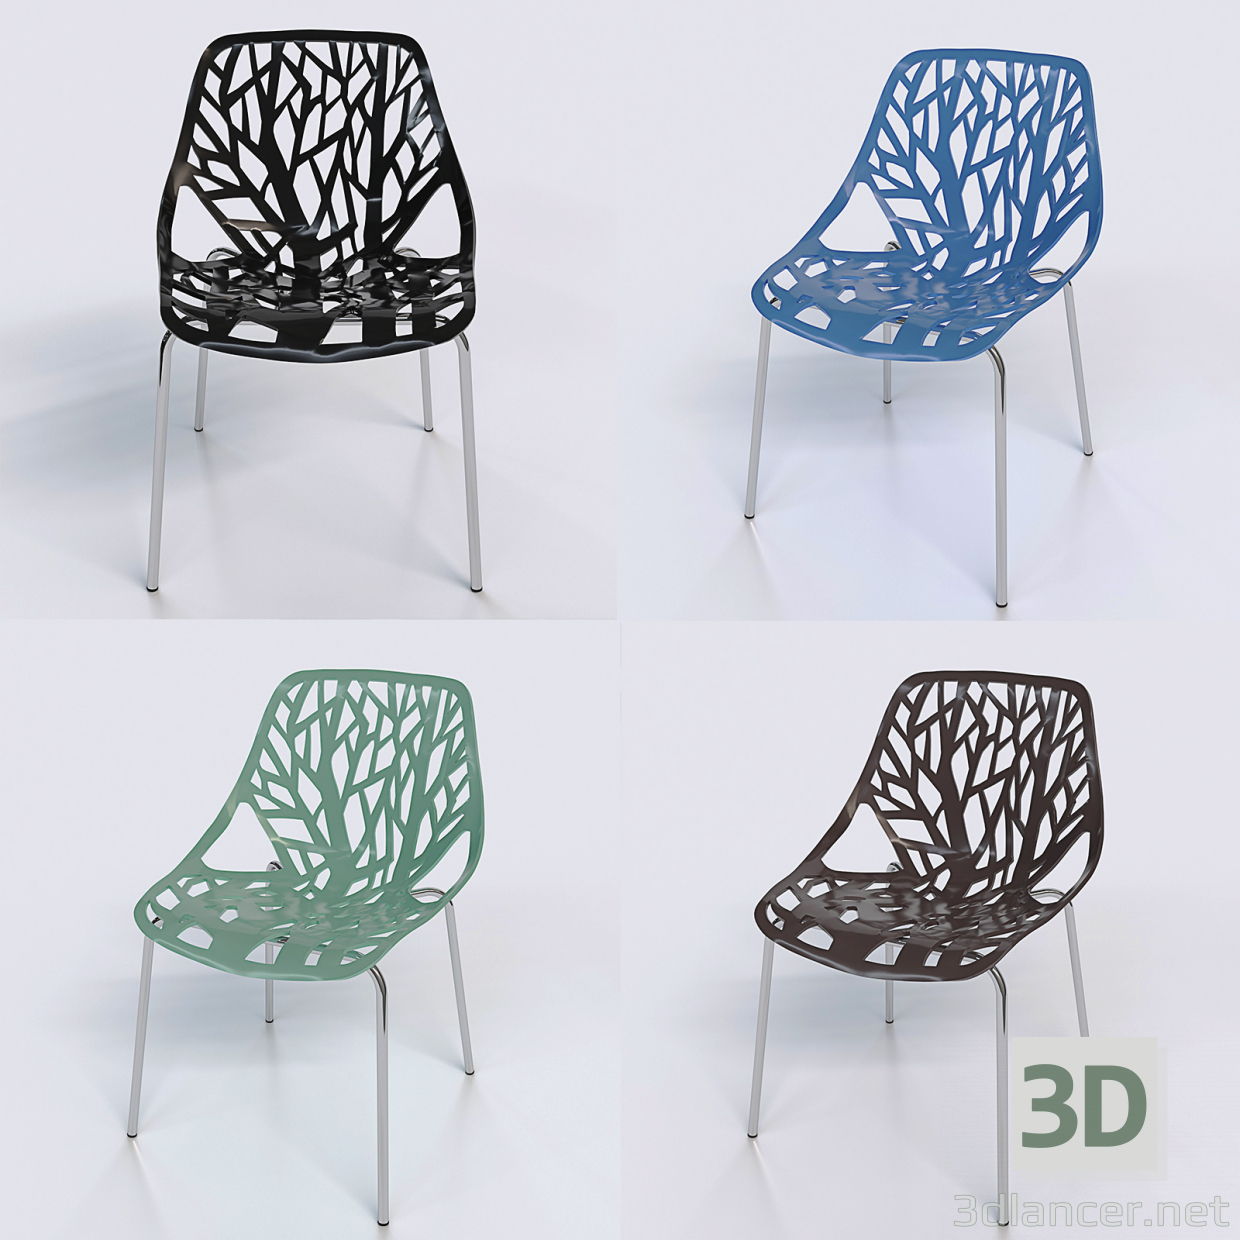 3 डी भोजन कुर्सी मॉडल खरीद - रेंडर